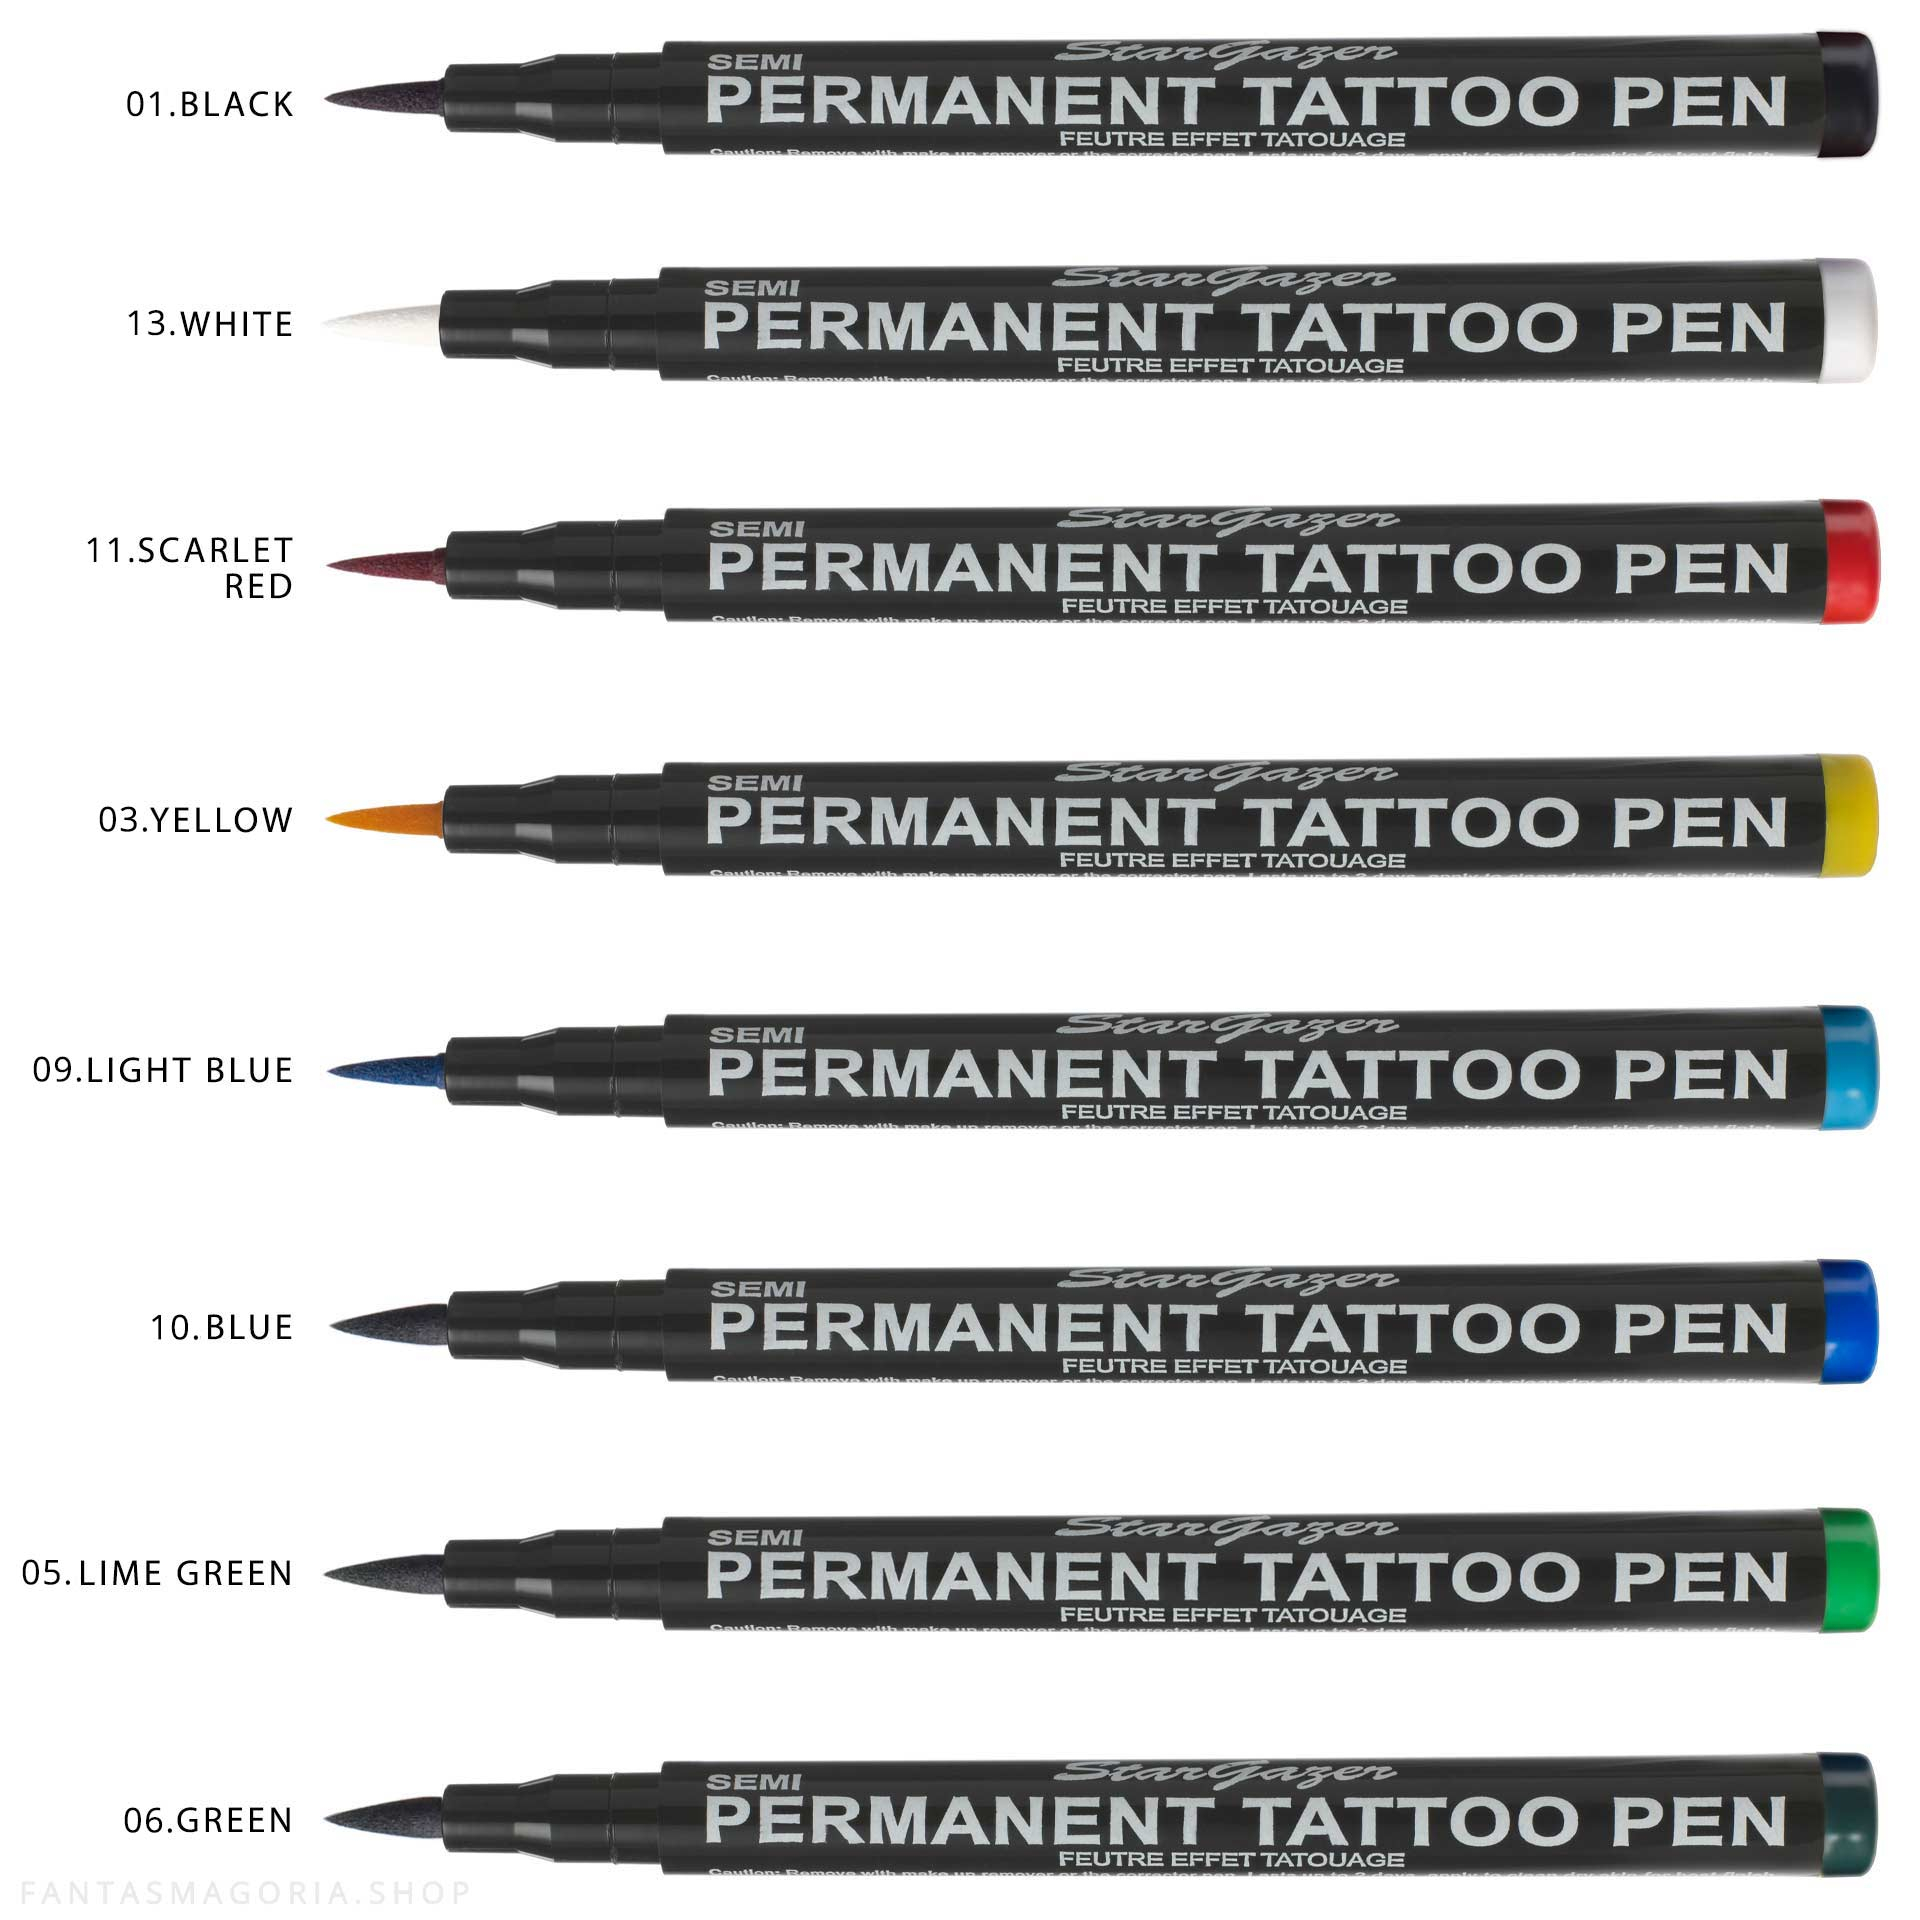 Inademen Uitgestorven Huidige Semi Permanent Tattoo Pen by Stargazer brand